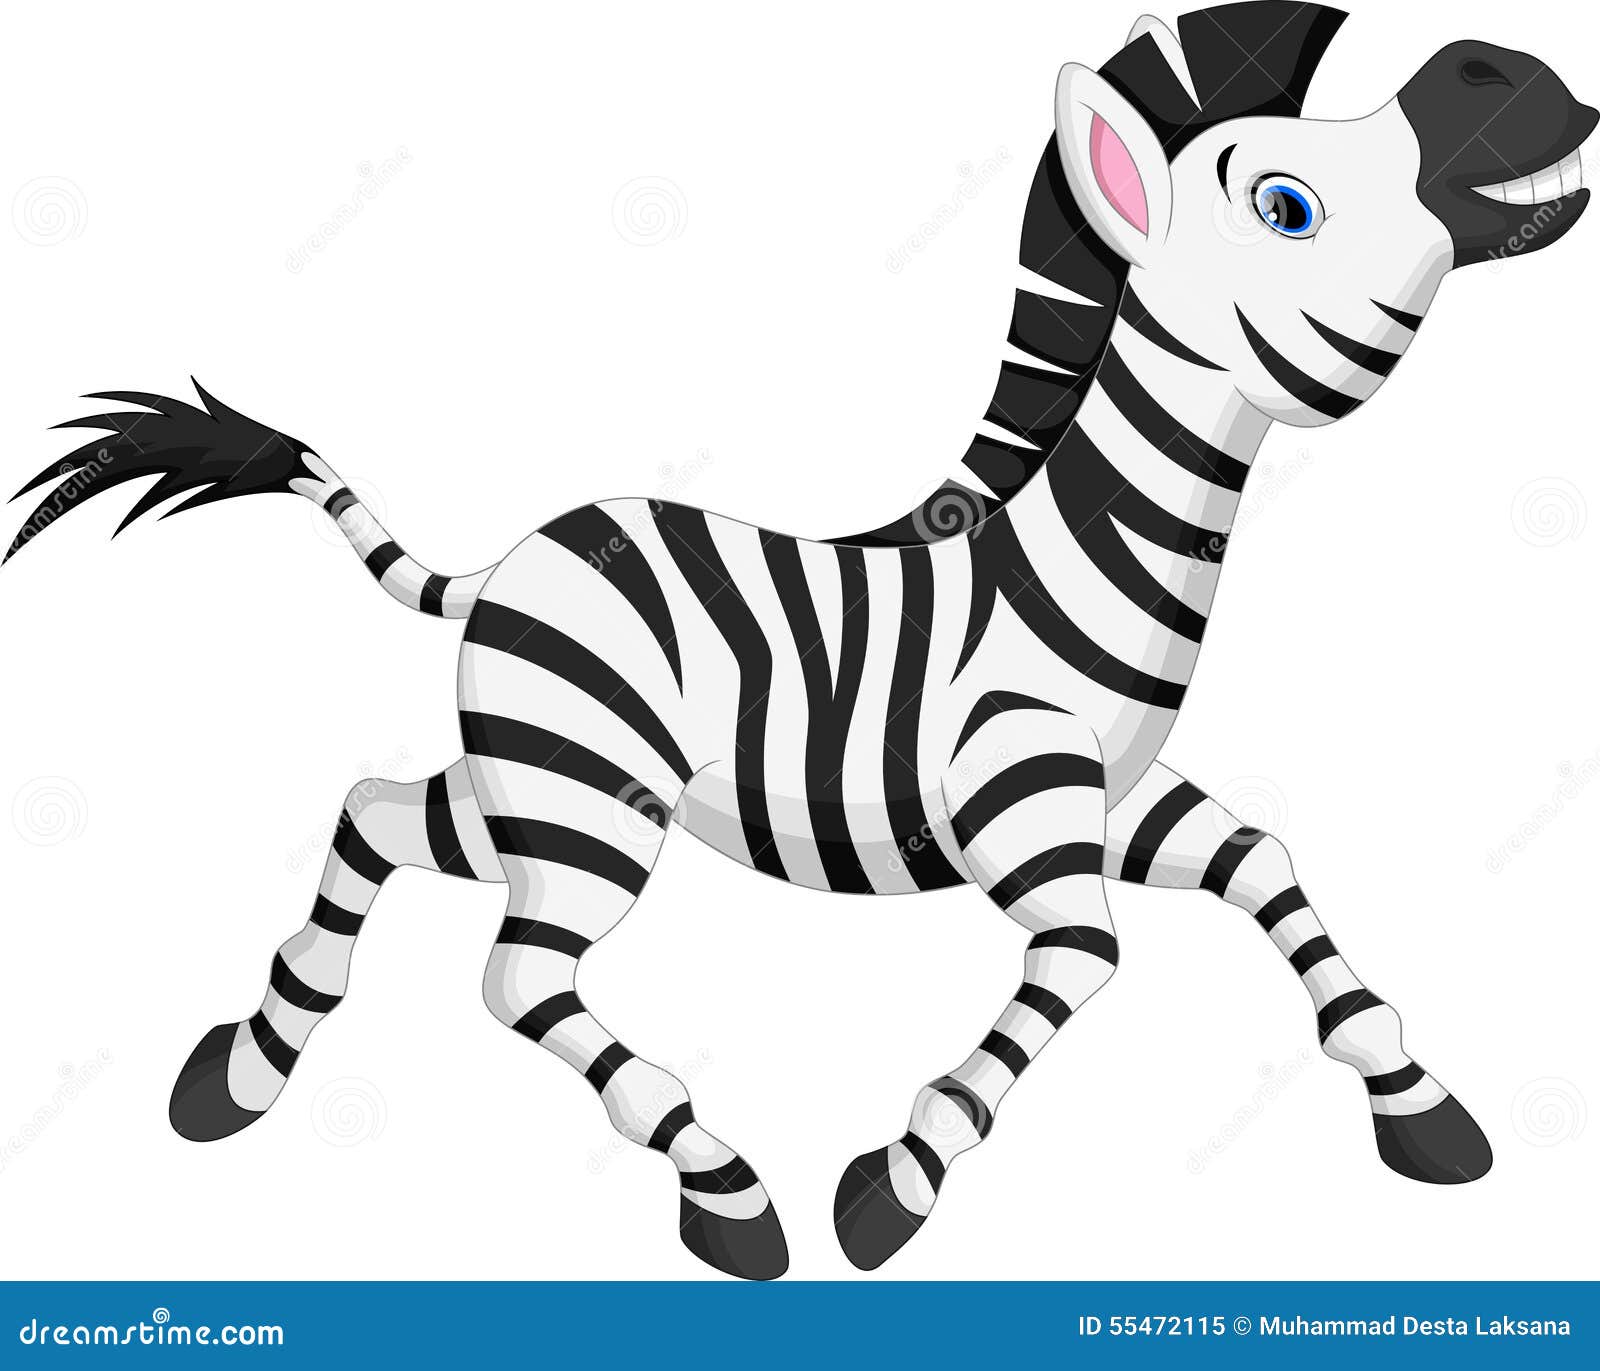 zebra running clipart - photo #13